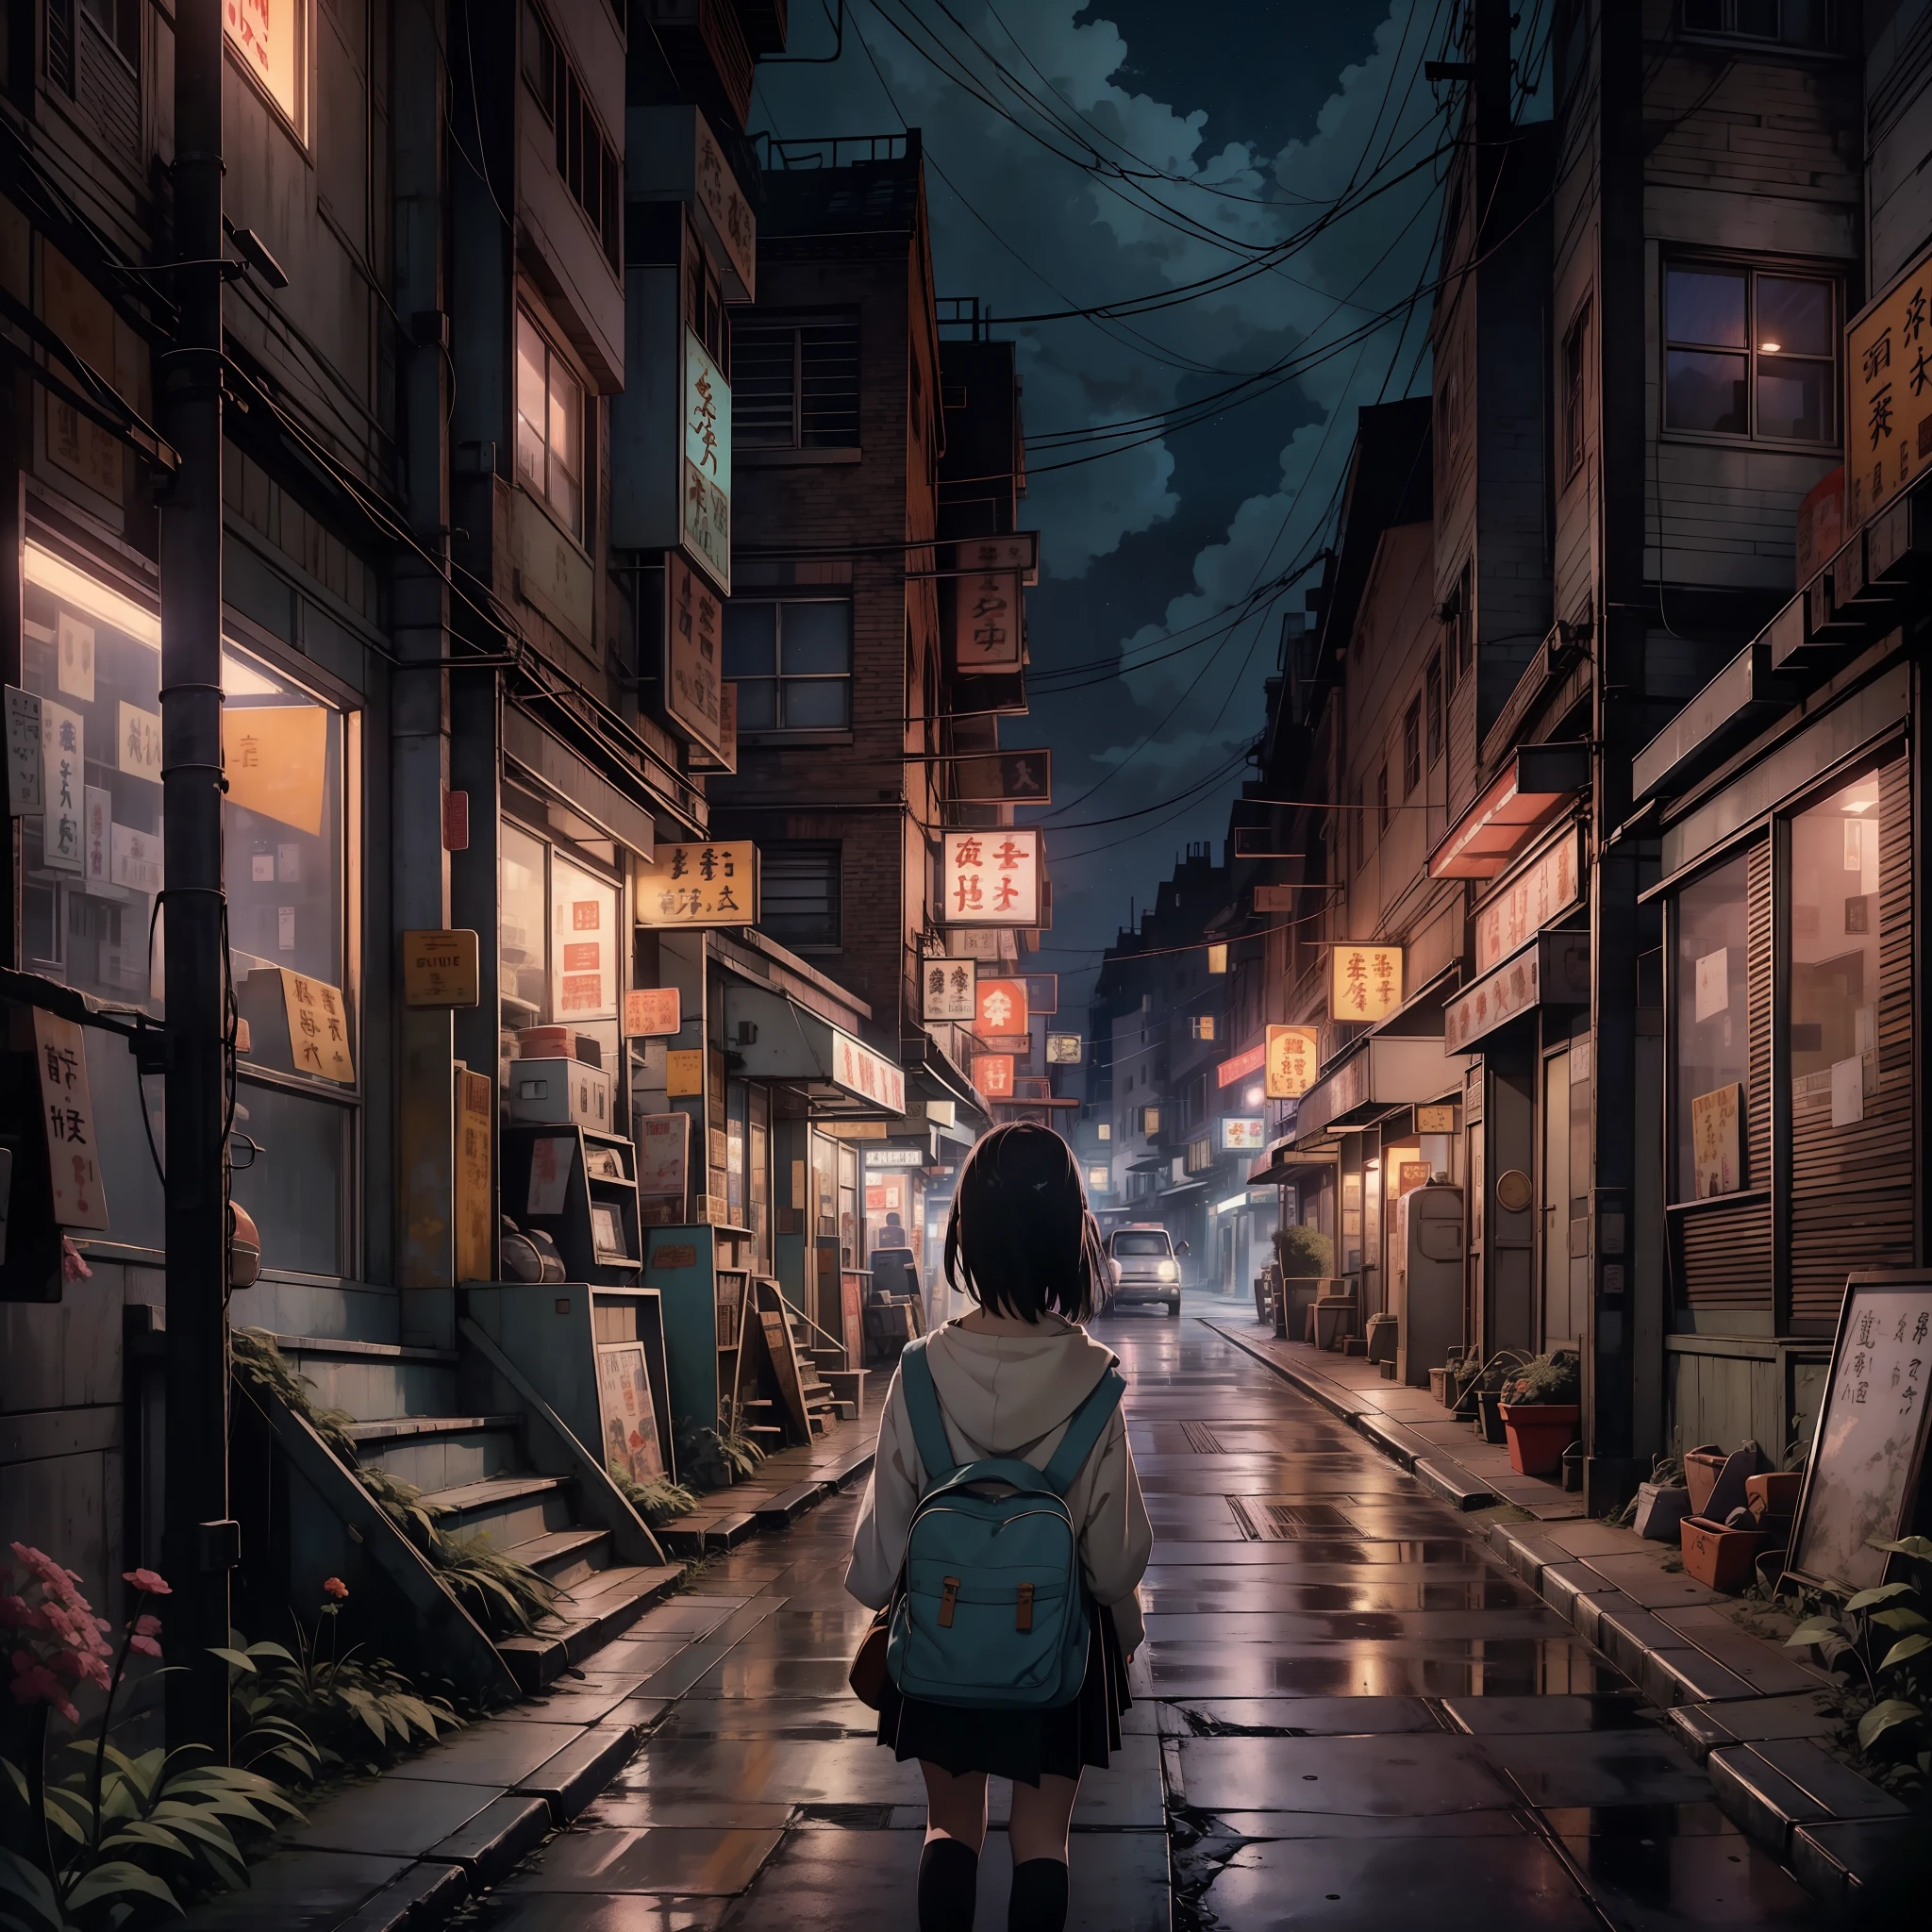 Uma nostálgica pintura digital inspirada no mundo encantador do Studio Ghibli. A obra retrata um encantador, rua de cidade pequena à noite, exalando uma sensação de tranquilidade e admiração. O cenário está montado para um momento cinematográfico, lembra uma cena de um filme do Ghibli. Na composição, uma garota solitária do ensino médio fica em contemplação, ela está de costas para o espectador, emanando um toque de melancolia. O mundo ao seu redor é lindamente detalhado, capturando a essência de uma atmosfera nostálgica. O céu acima é adornado com uma exibição deslumbrante de estrelas, evocando um sentimento de reminiscência melancólica que ressoa com espectadores de todas as idades.